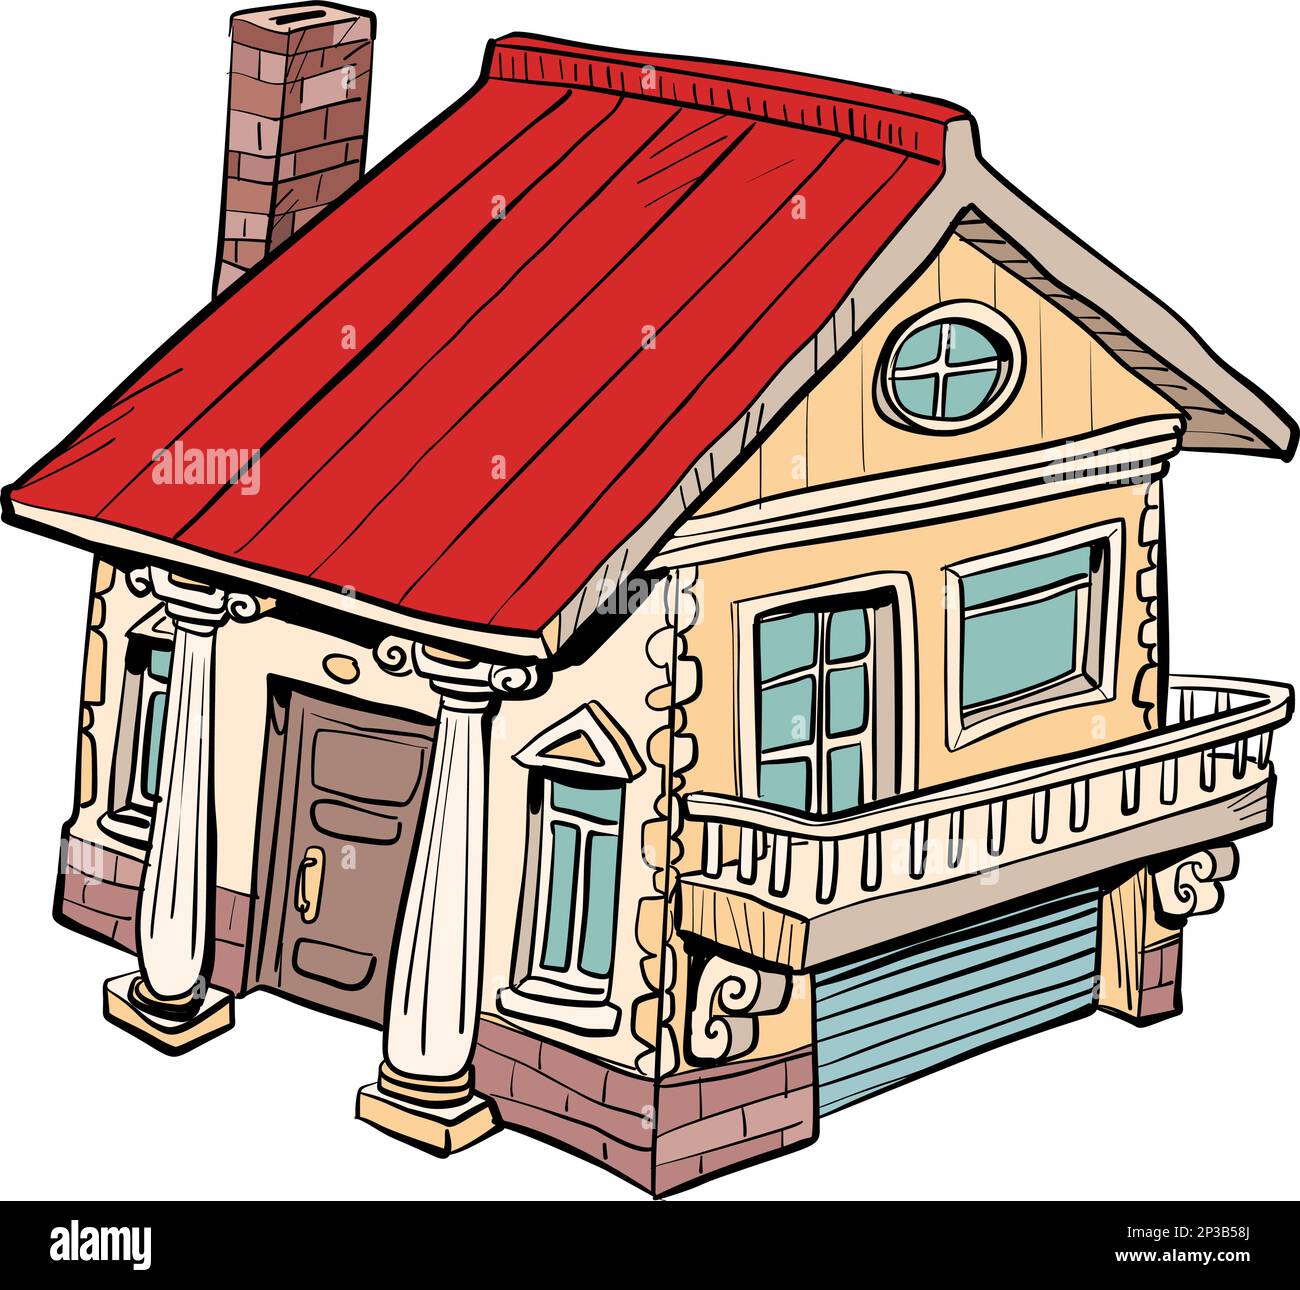 Una casa accogliente e bella con un tetto rosso, un garage, un camino e diverse finestre. Illustrazione Vettoriale